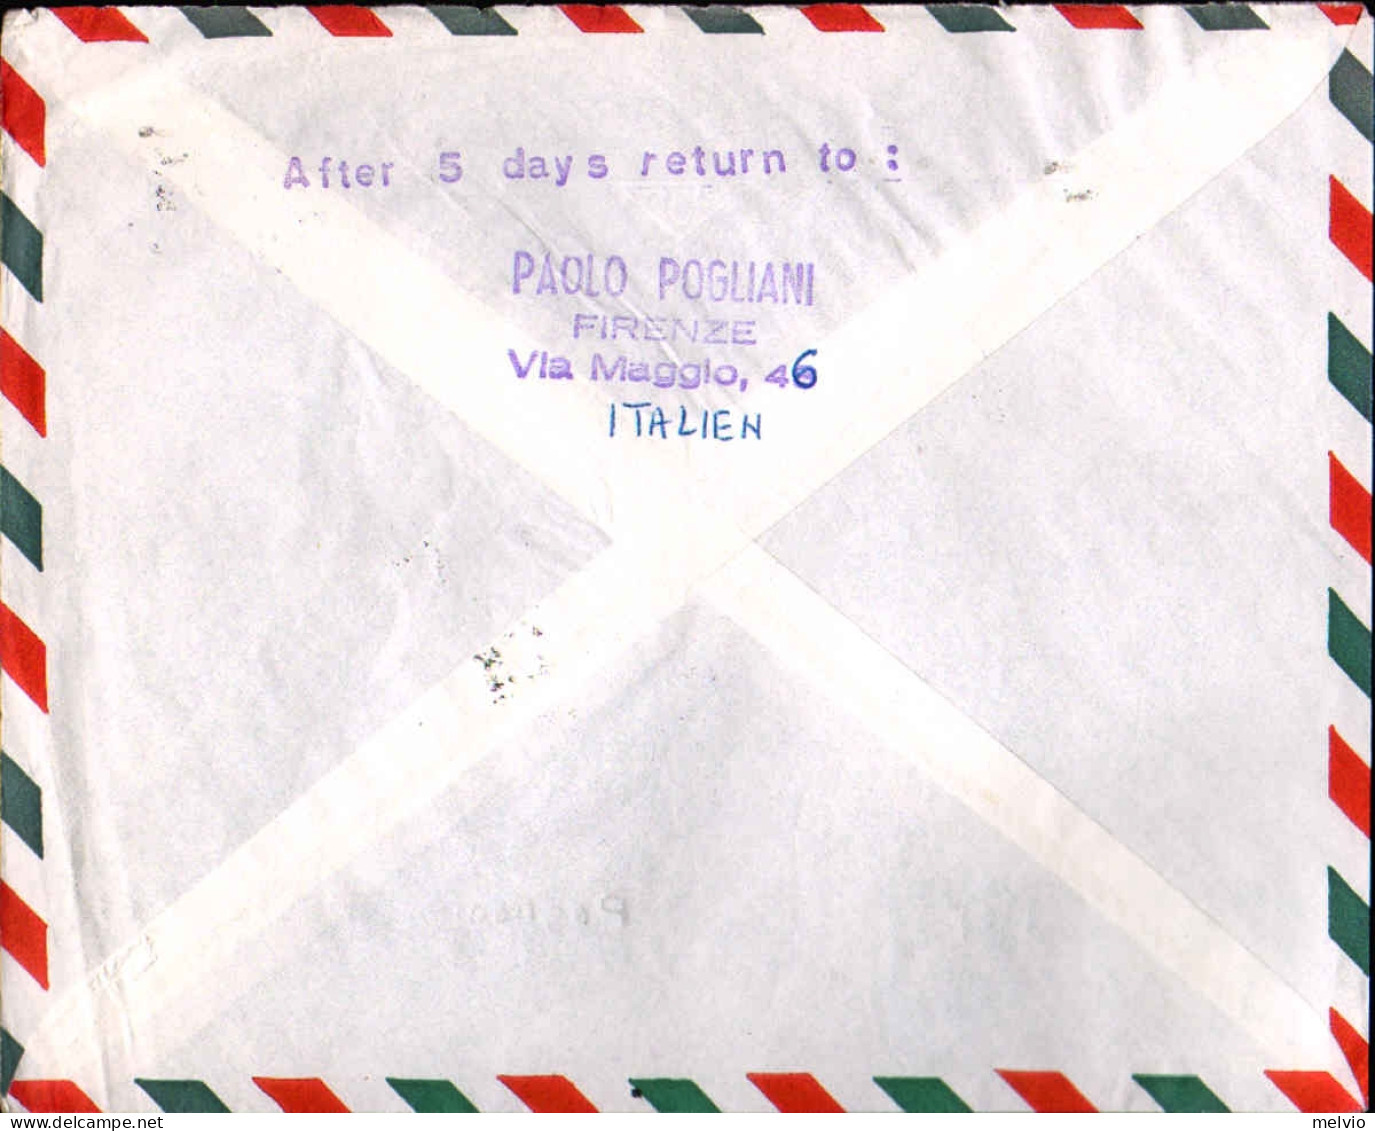 1958-AUA Roma Vienna Del 28 Giugno Affr. L.60 Esposizione Di Bruxelles Isolato,a - Airmail